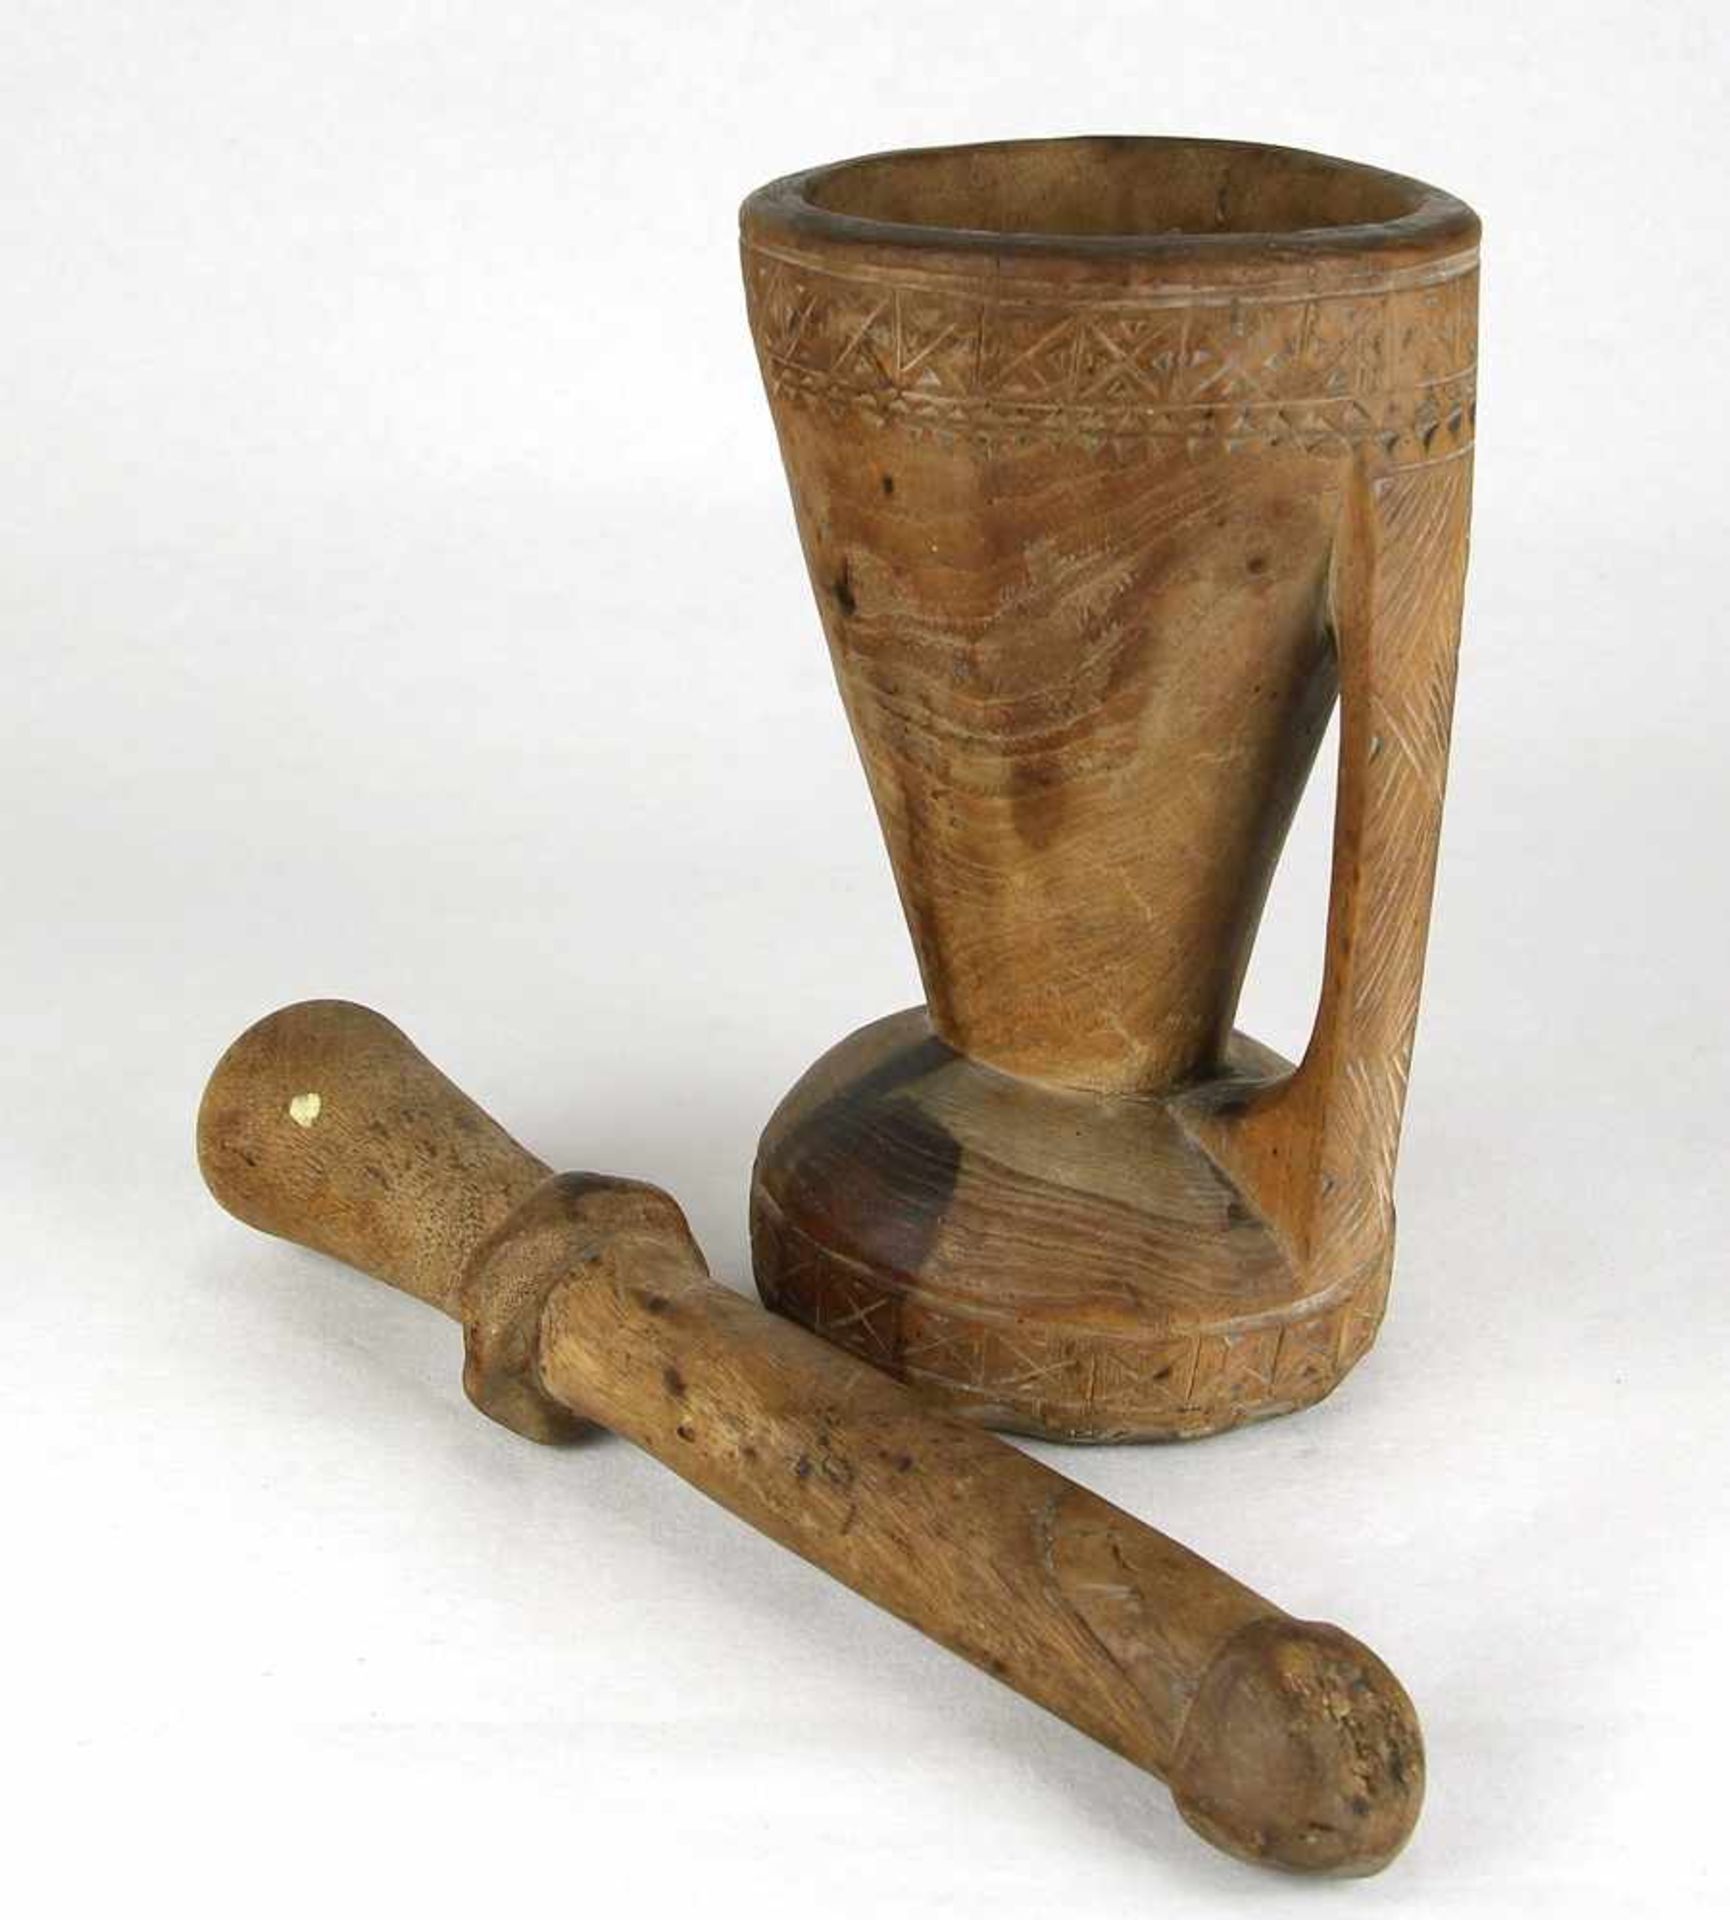 MörserWohl Nordafrika um 1900. Edelholz geschnitzt. Mörser mit Pistill. Größe ca. 9,5 x 8,5 cm, Höhe